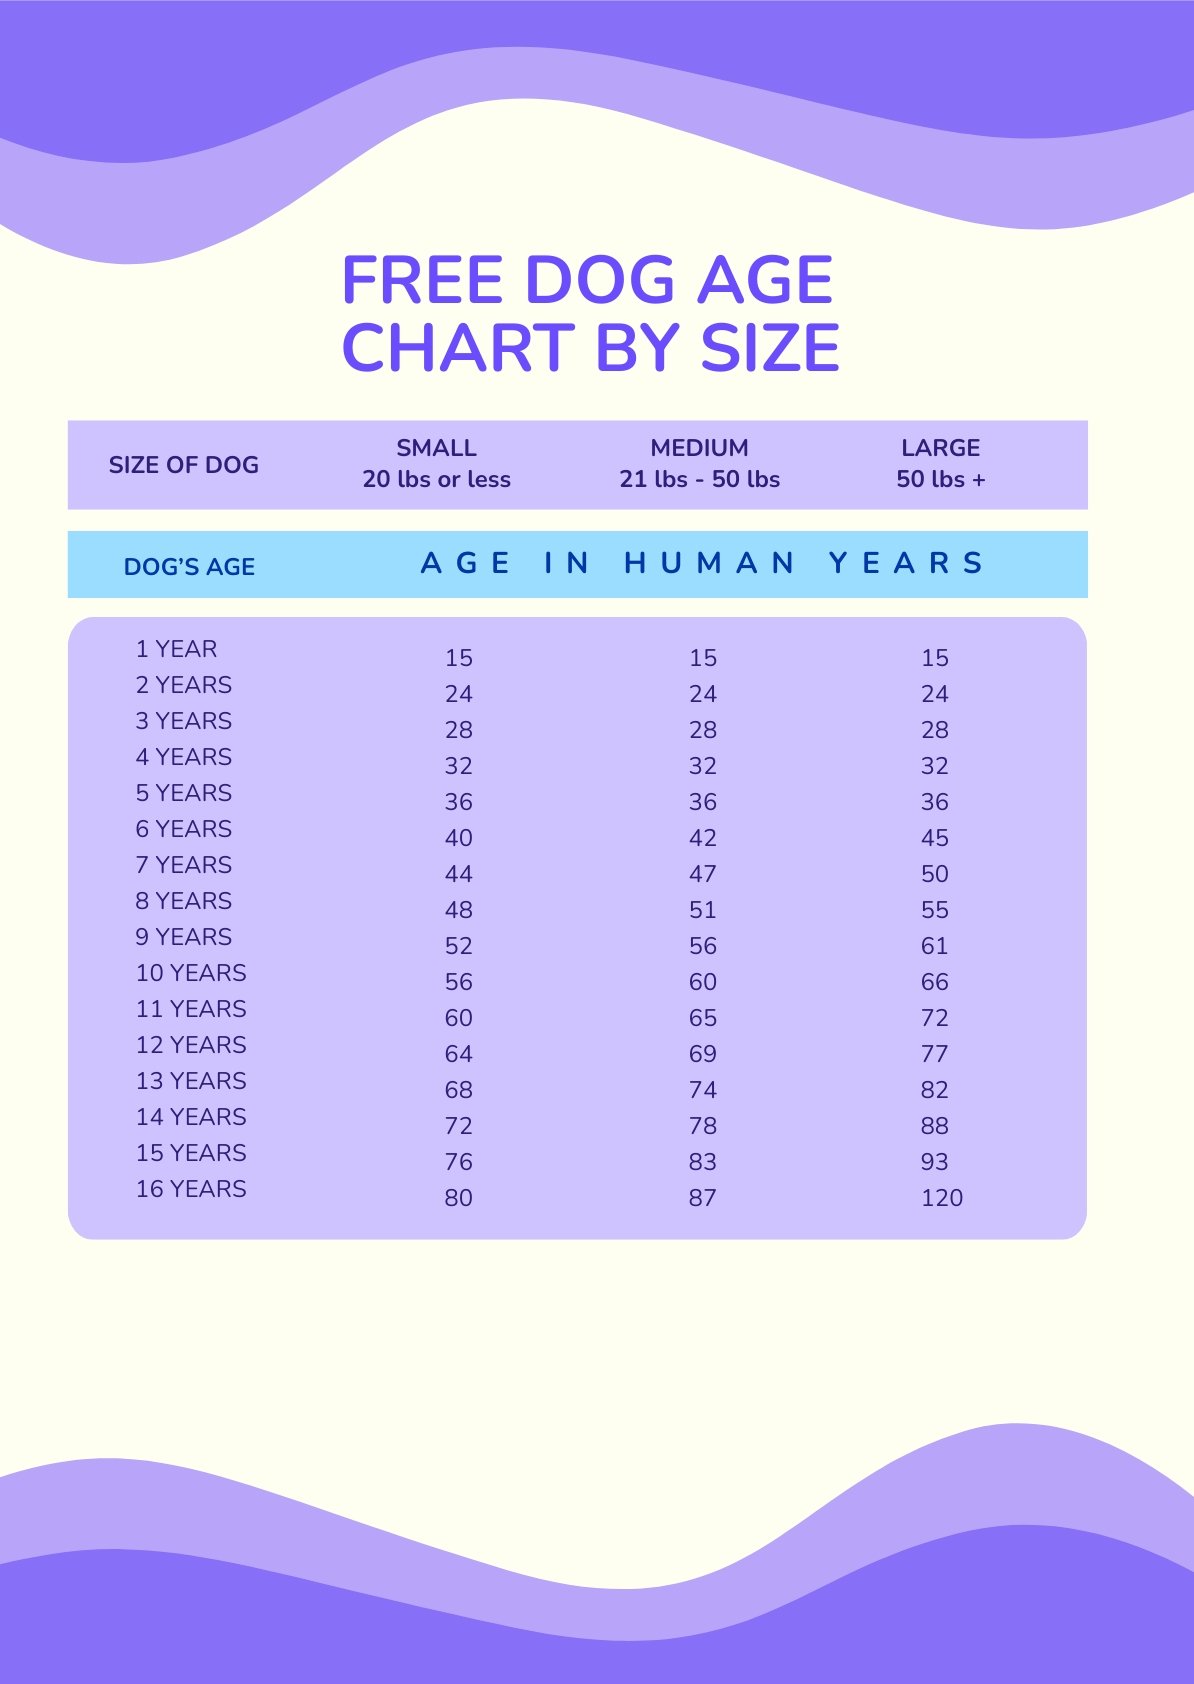 Printable Dog Age Chart